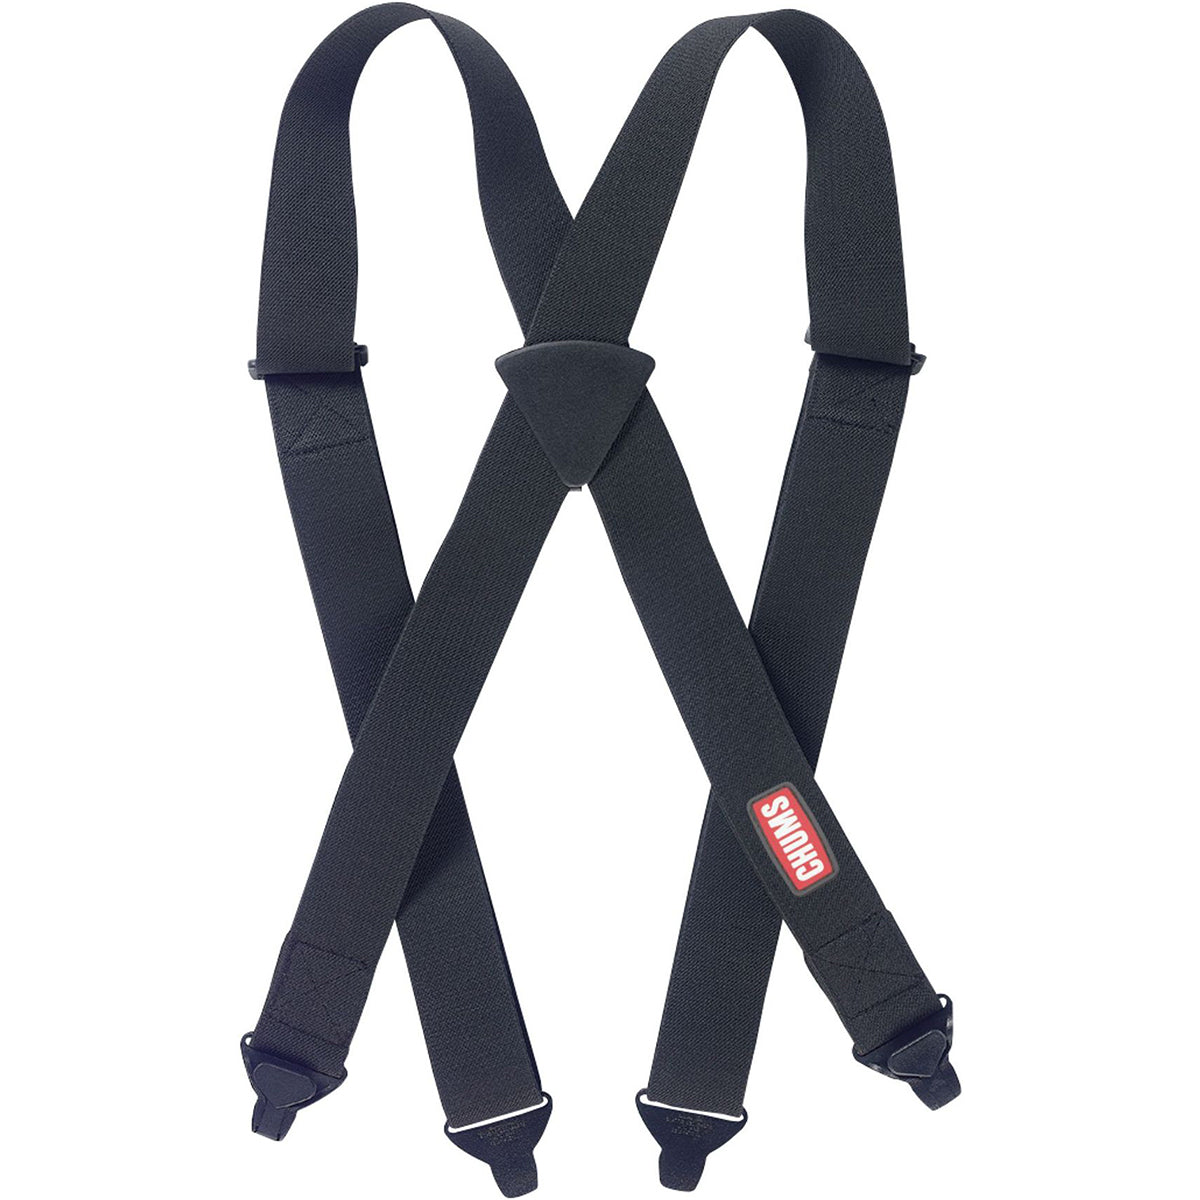 Chums Limited Ski Pants Adjustable Elastic Suspenders - Black Chums